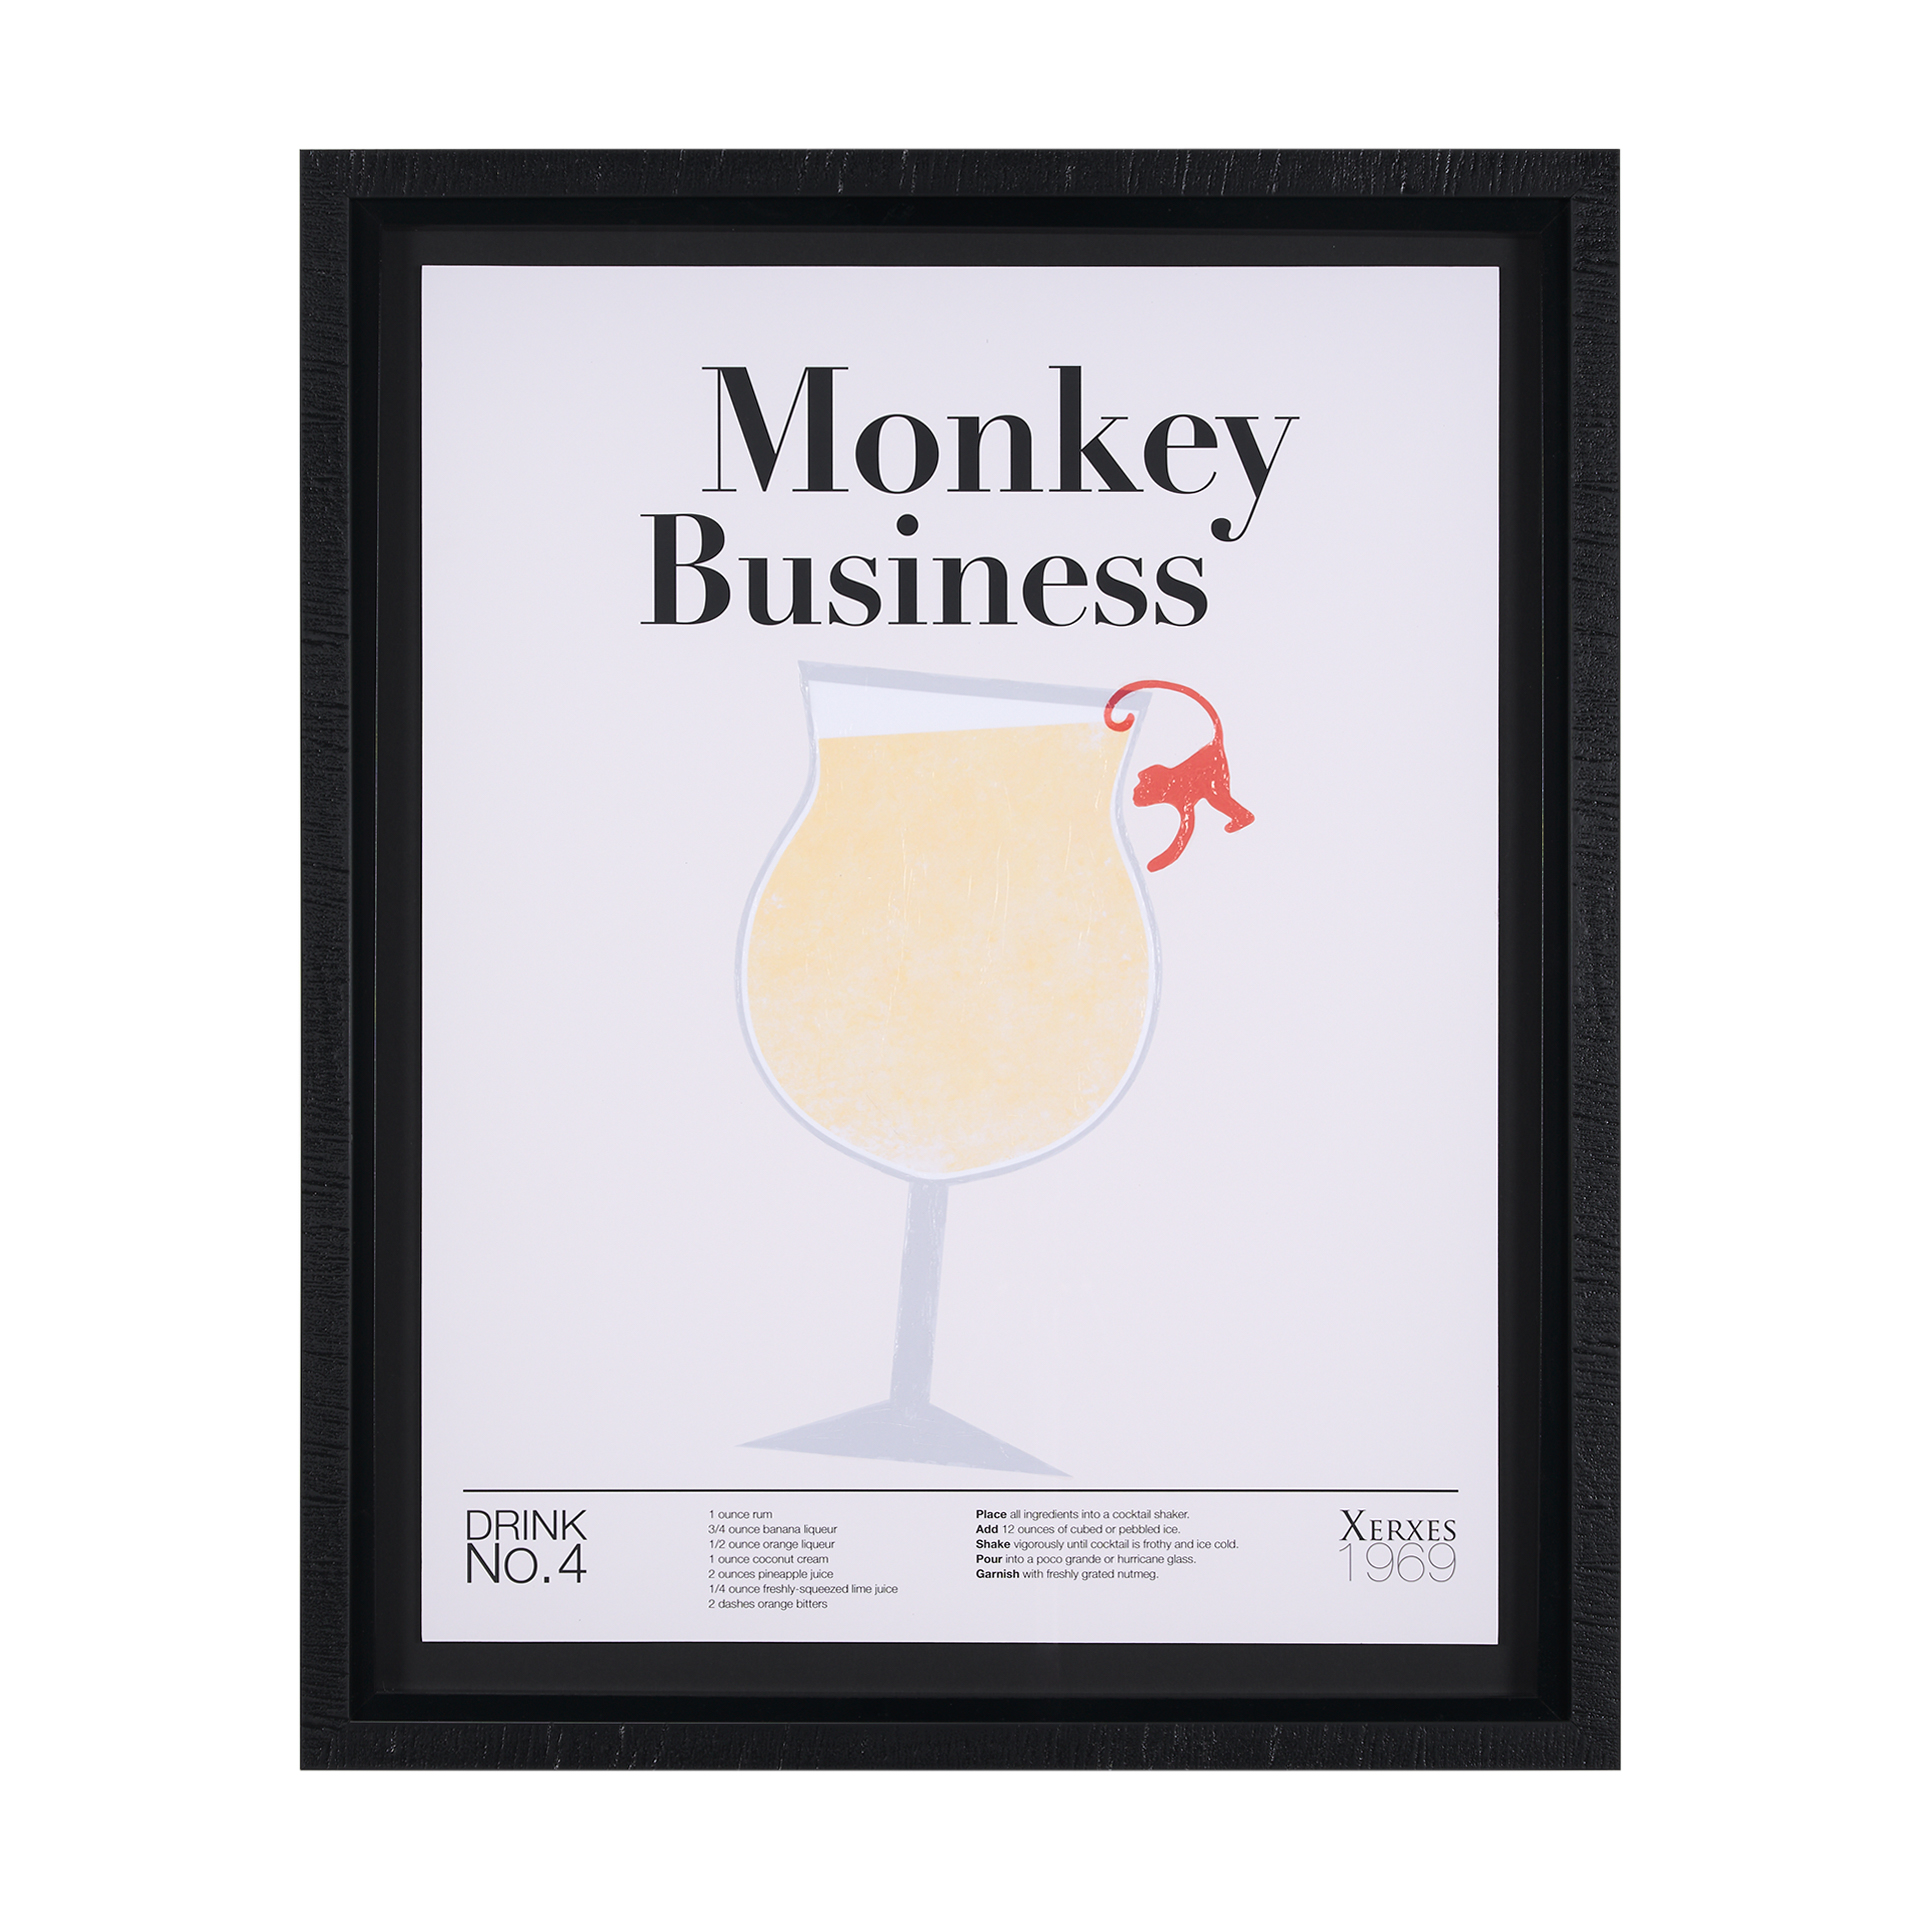 Monkey Business (26 x 32)